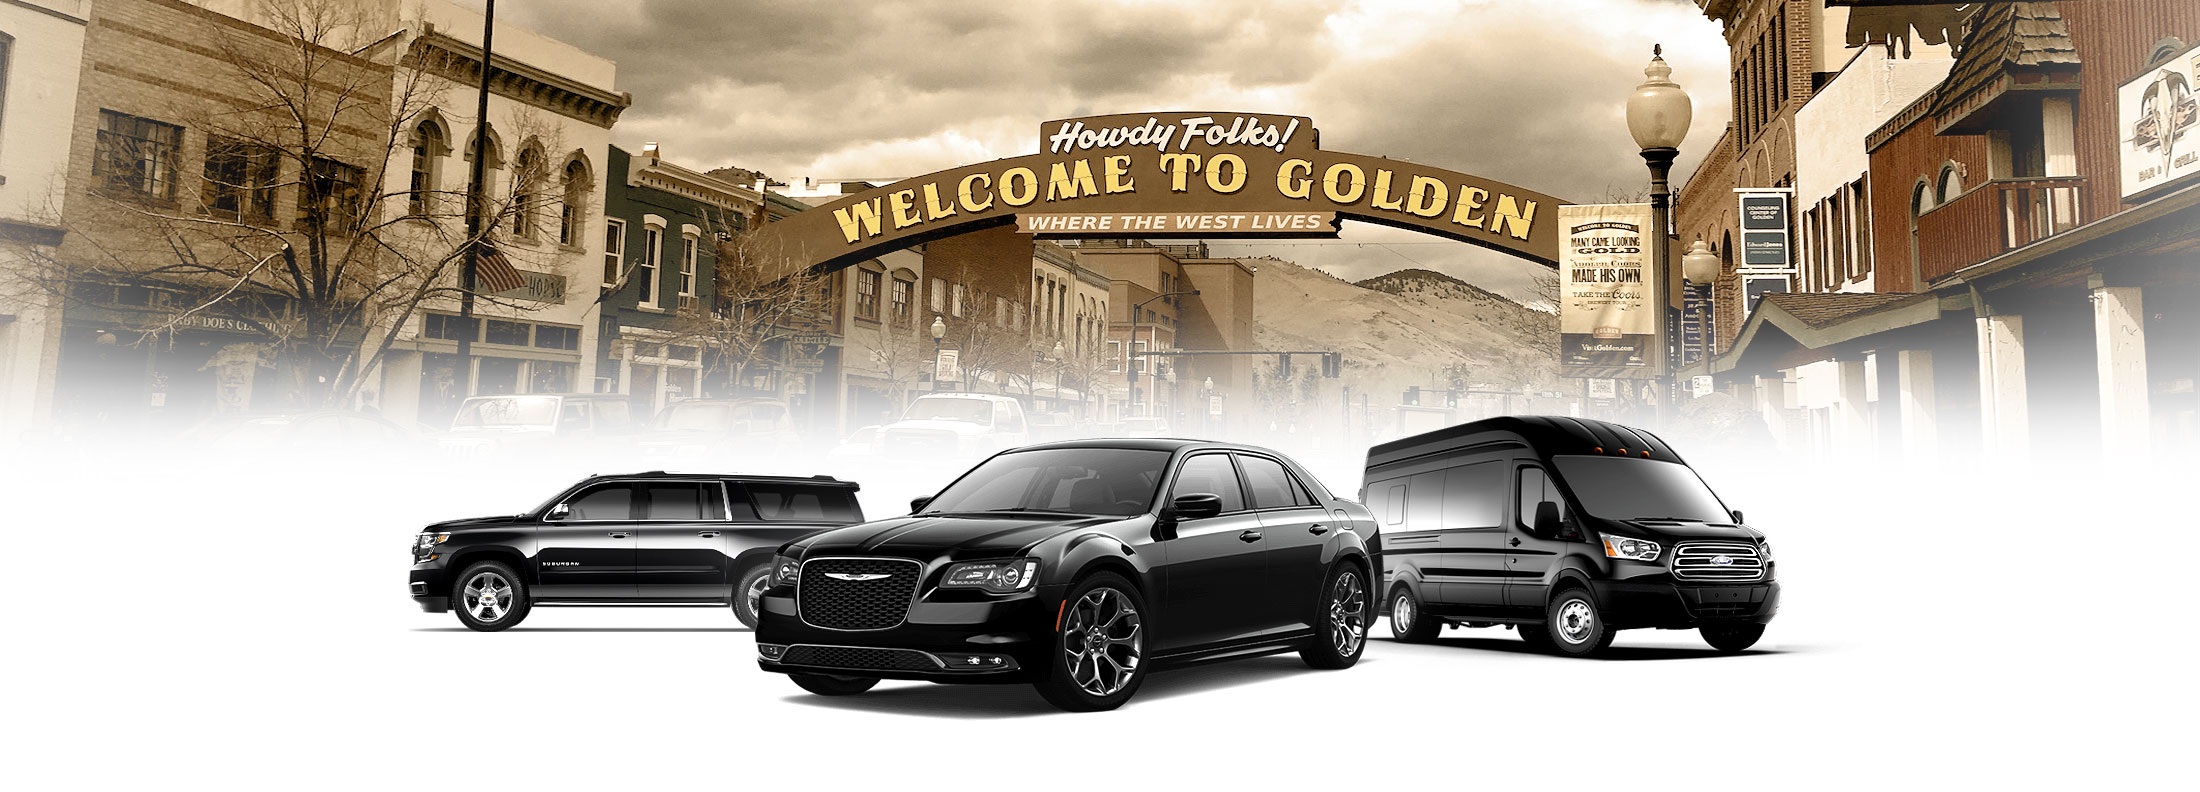 Golden Limousine Services